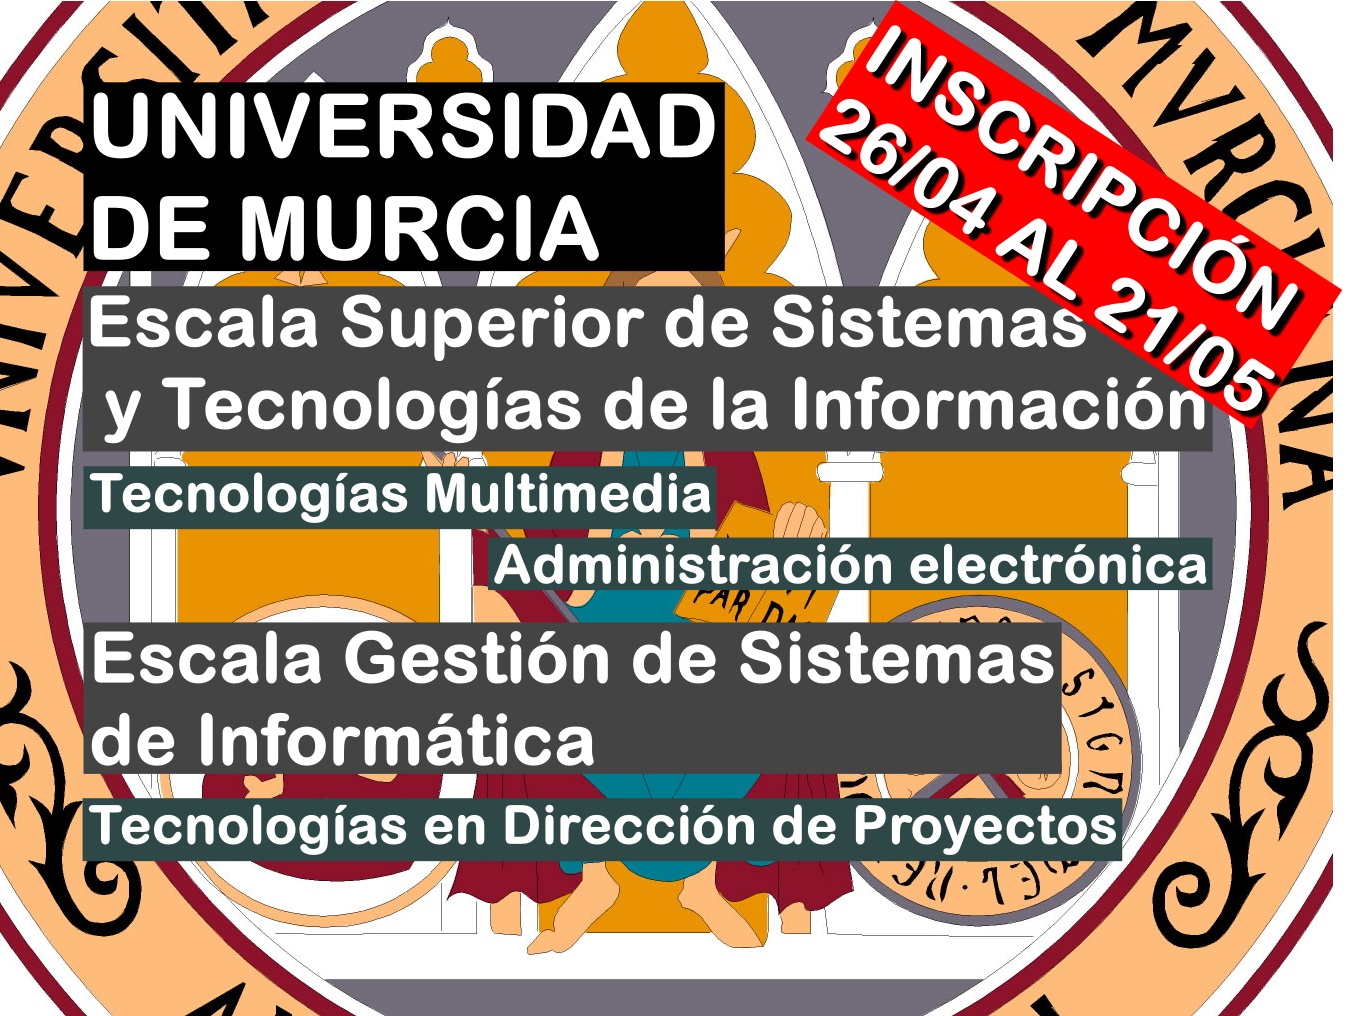 Universidad de Murcia convoca 3 procesos selectivos en la Escala Superior y de Gestión de Sistemas Informáticos